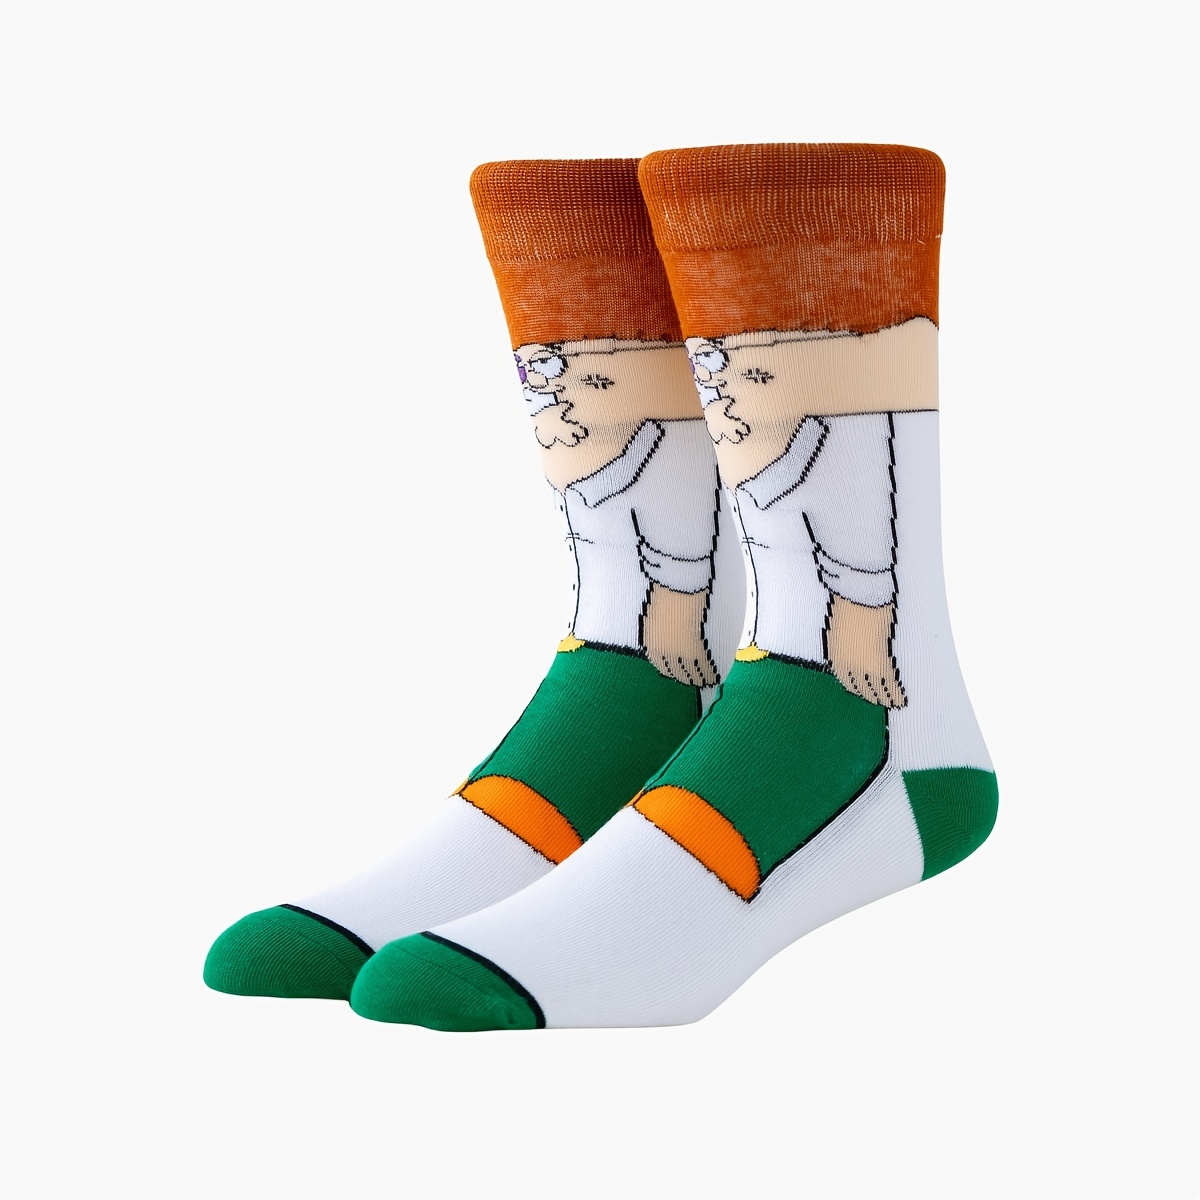 Buy Aniwon Men's 3 Pairs Christmas Socks Fun Cute Socks Cartoon